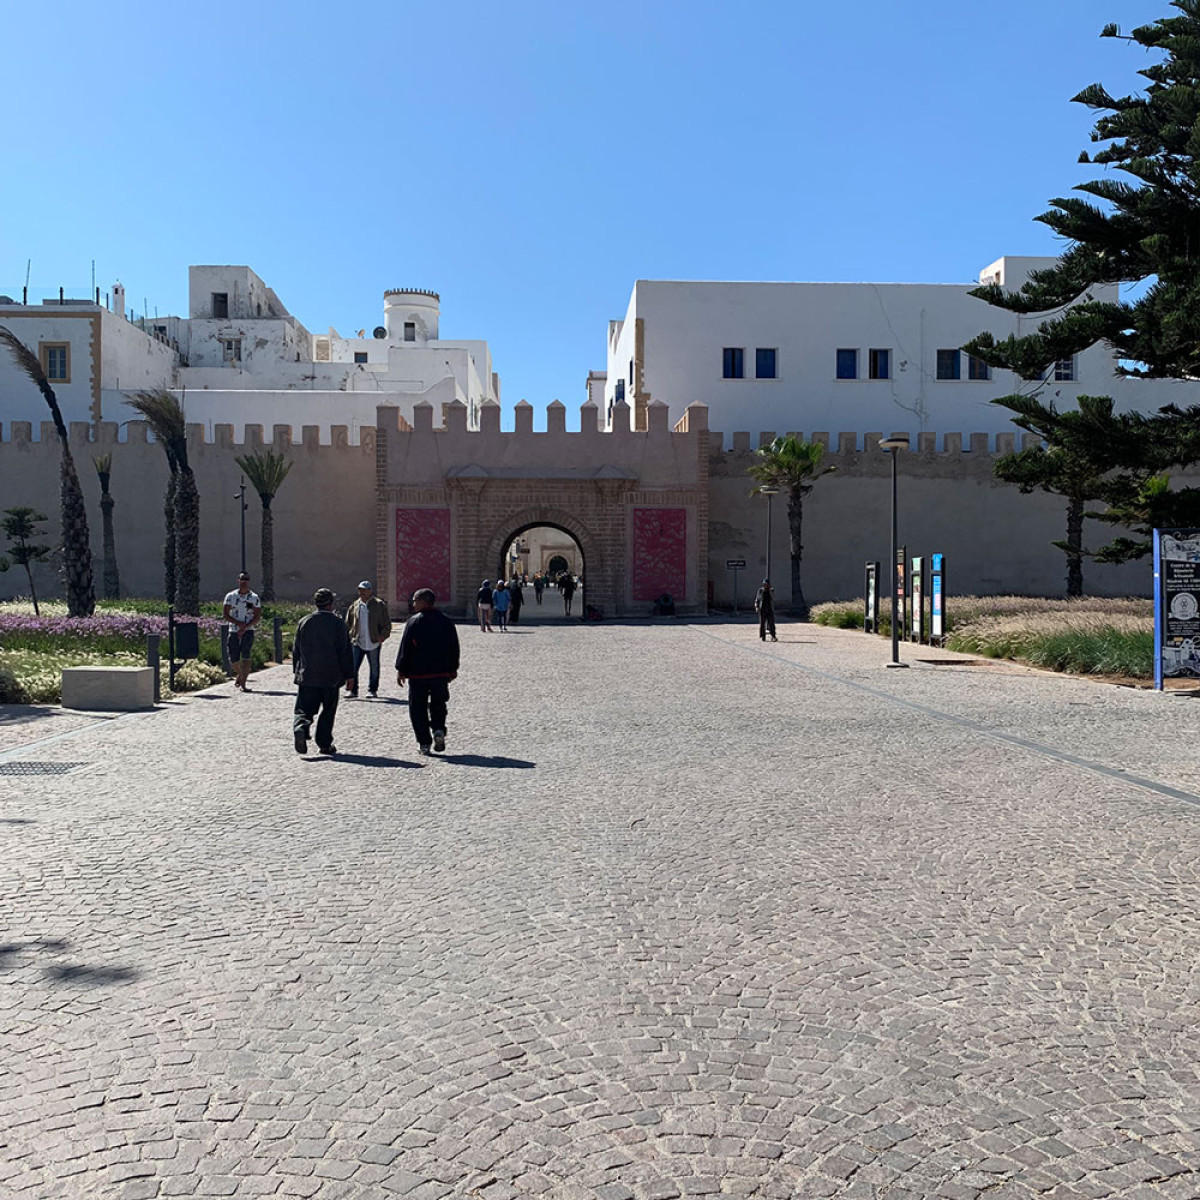 Bezoek de locals van Essaouira